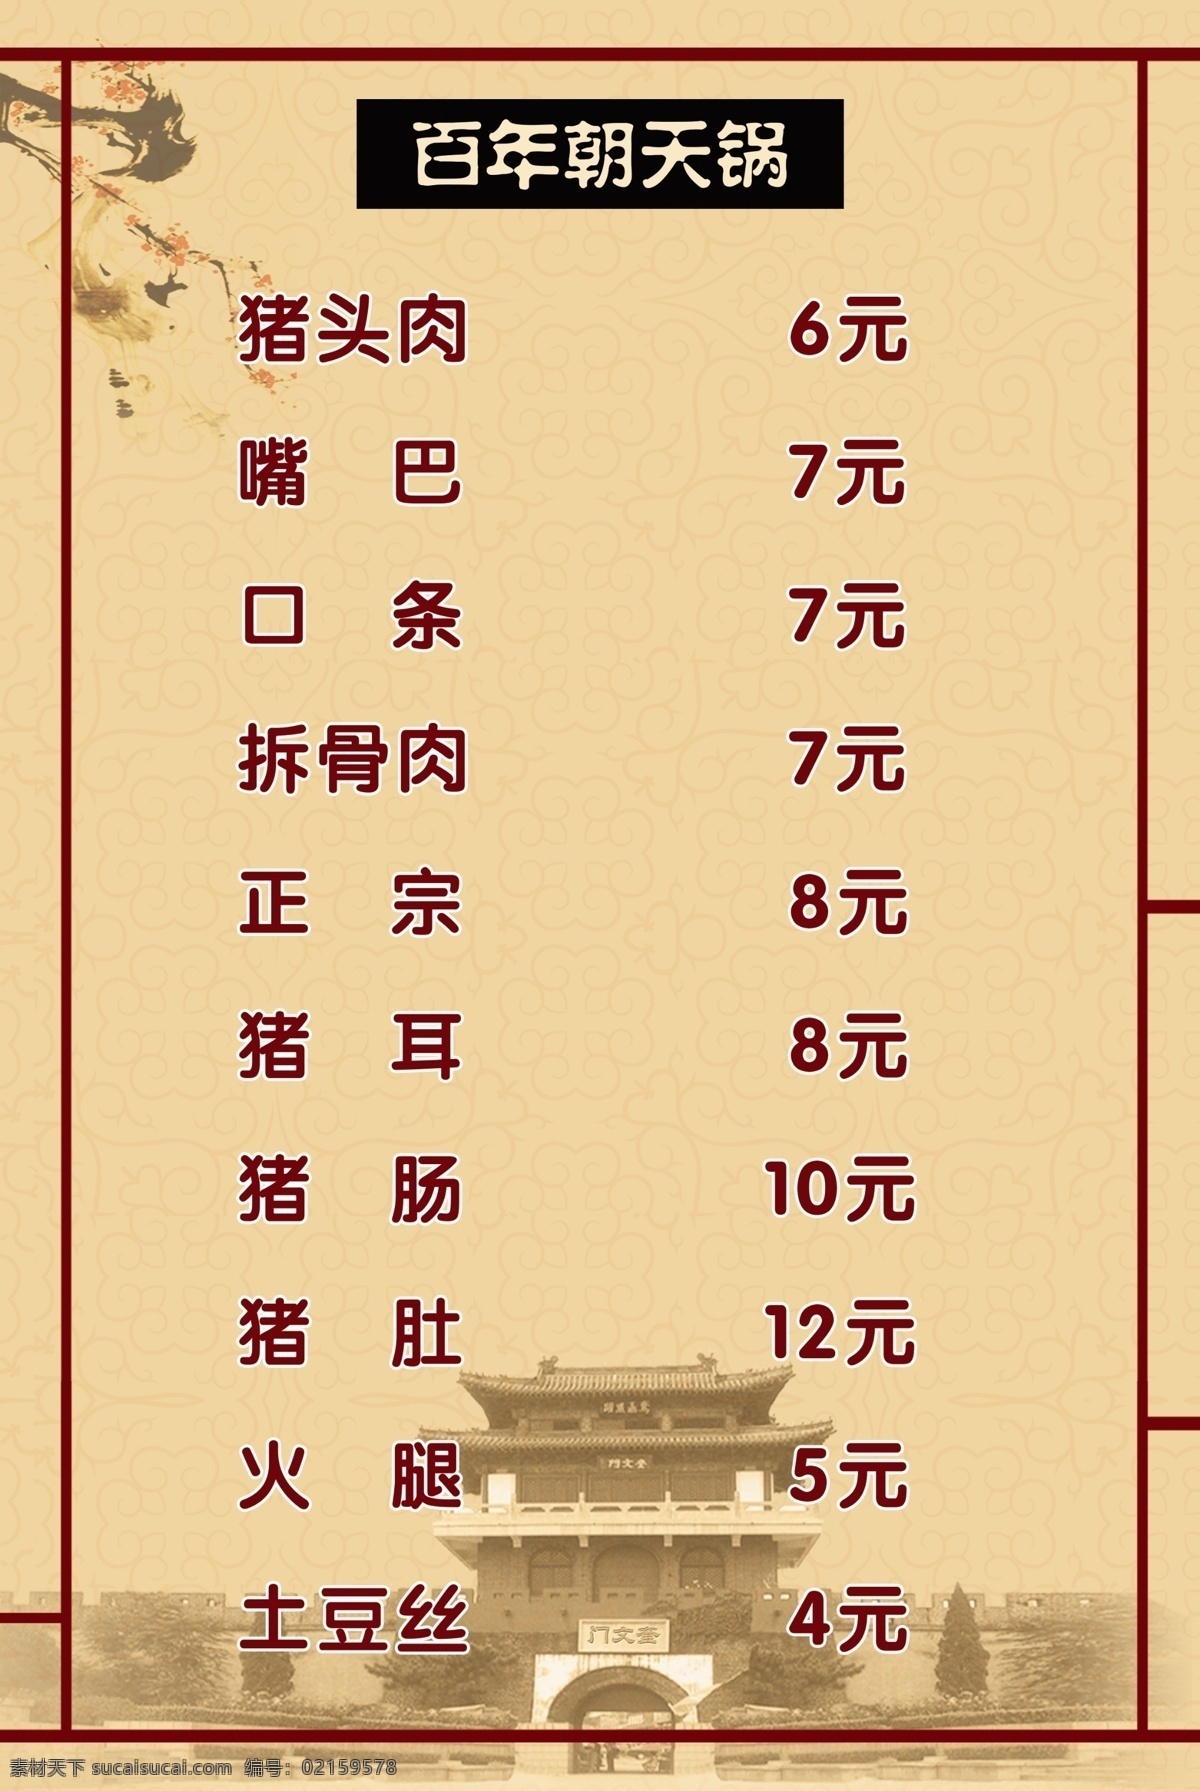 朝天锅 菜单 传统美食 百年朝天锅 展板 展板模板